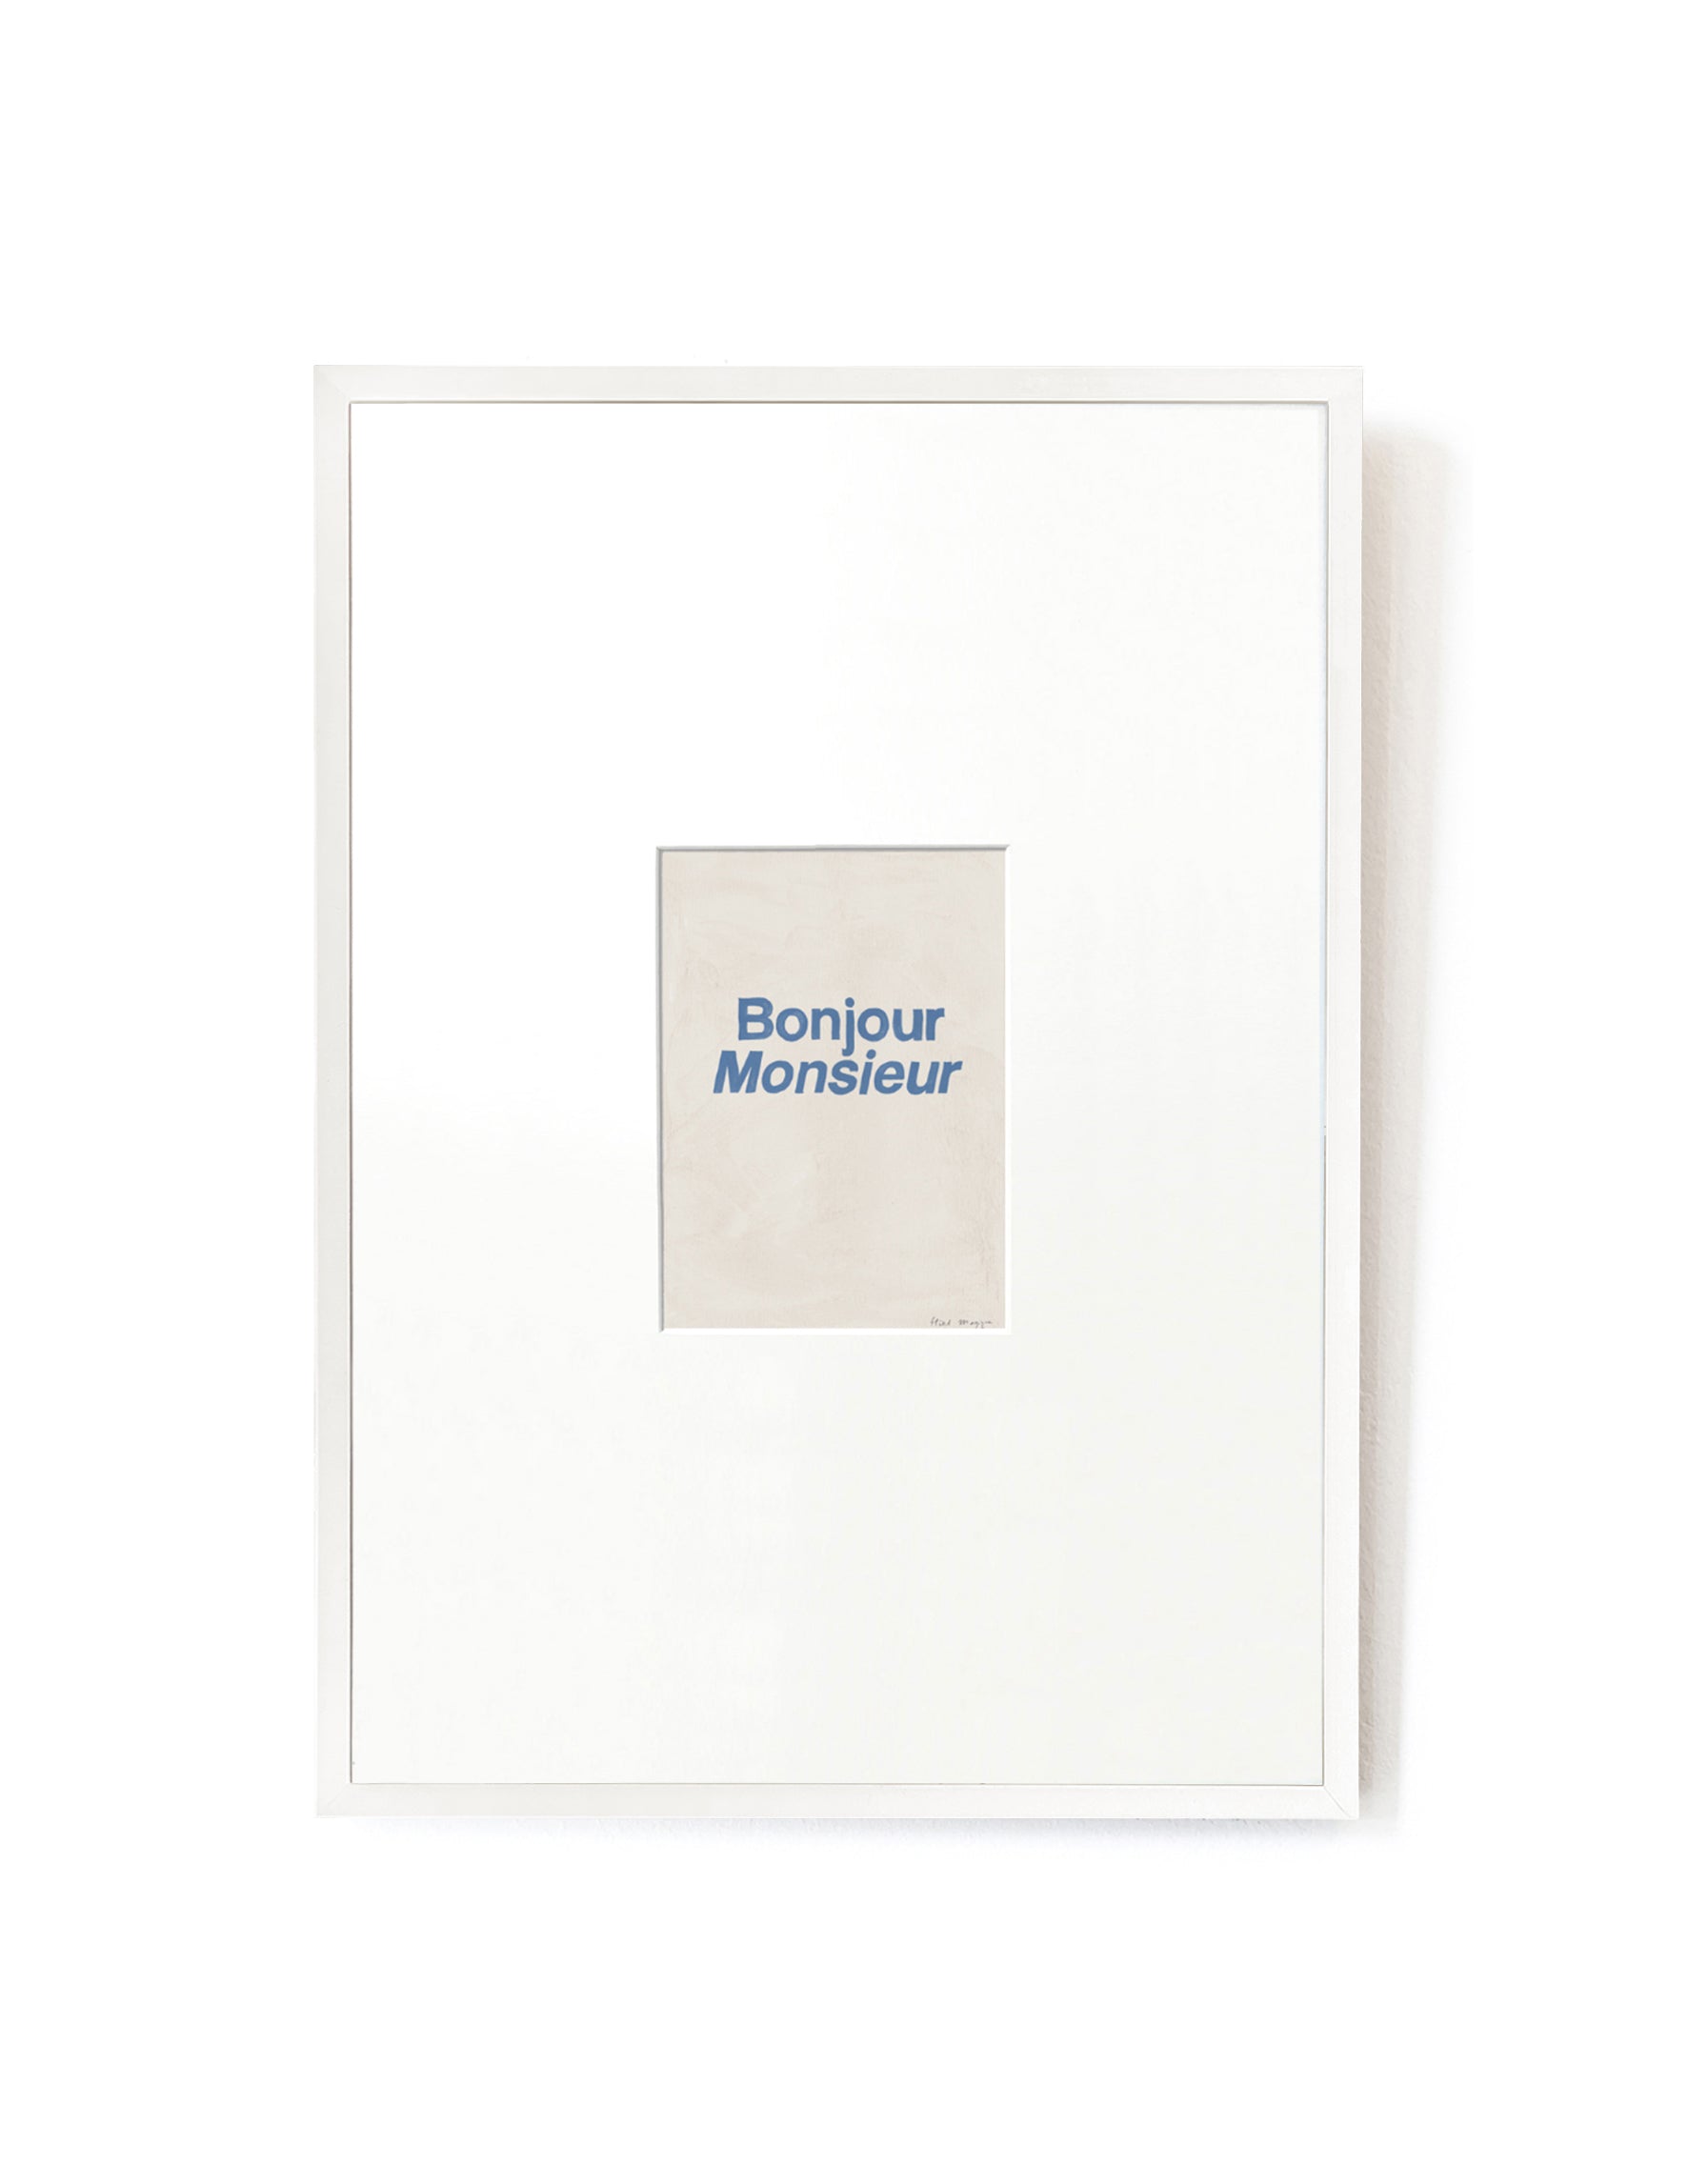 Bonjour Monsieur card artwork framed